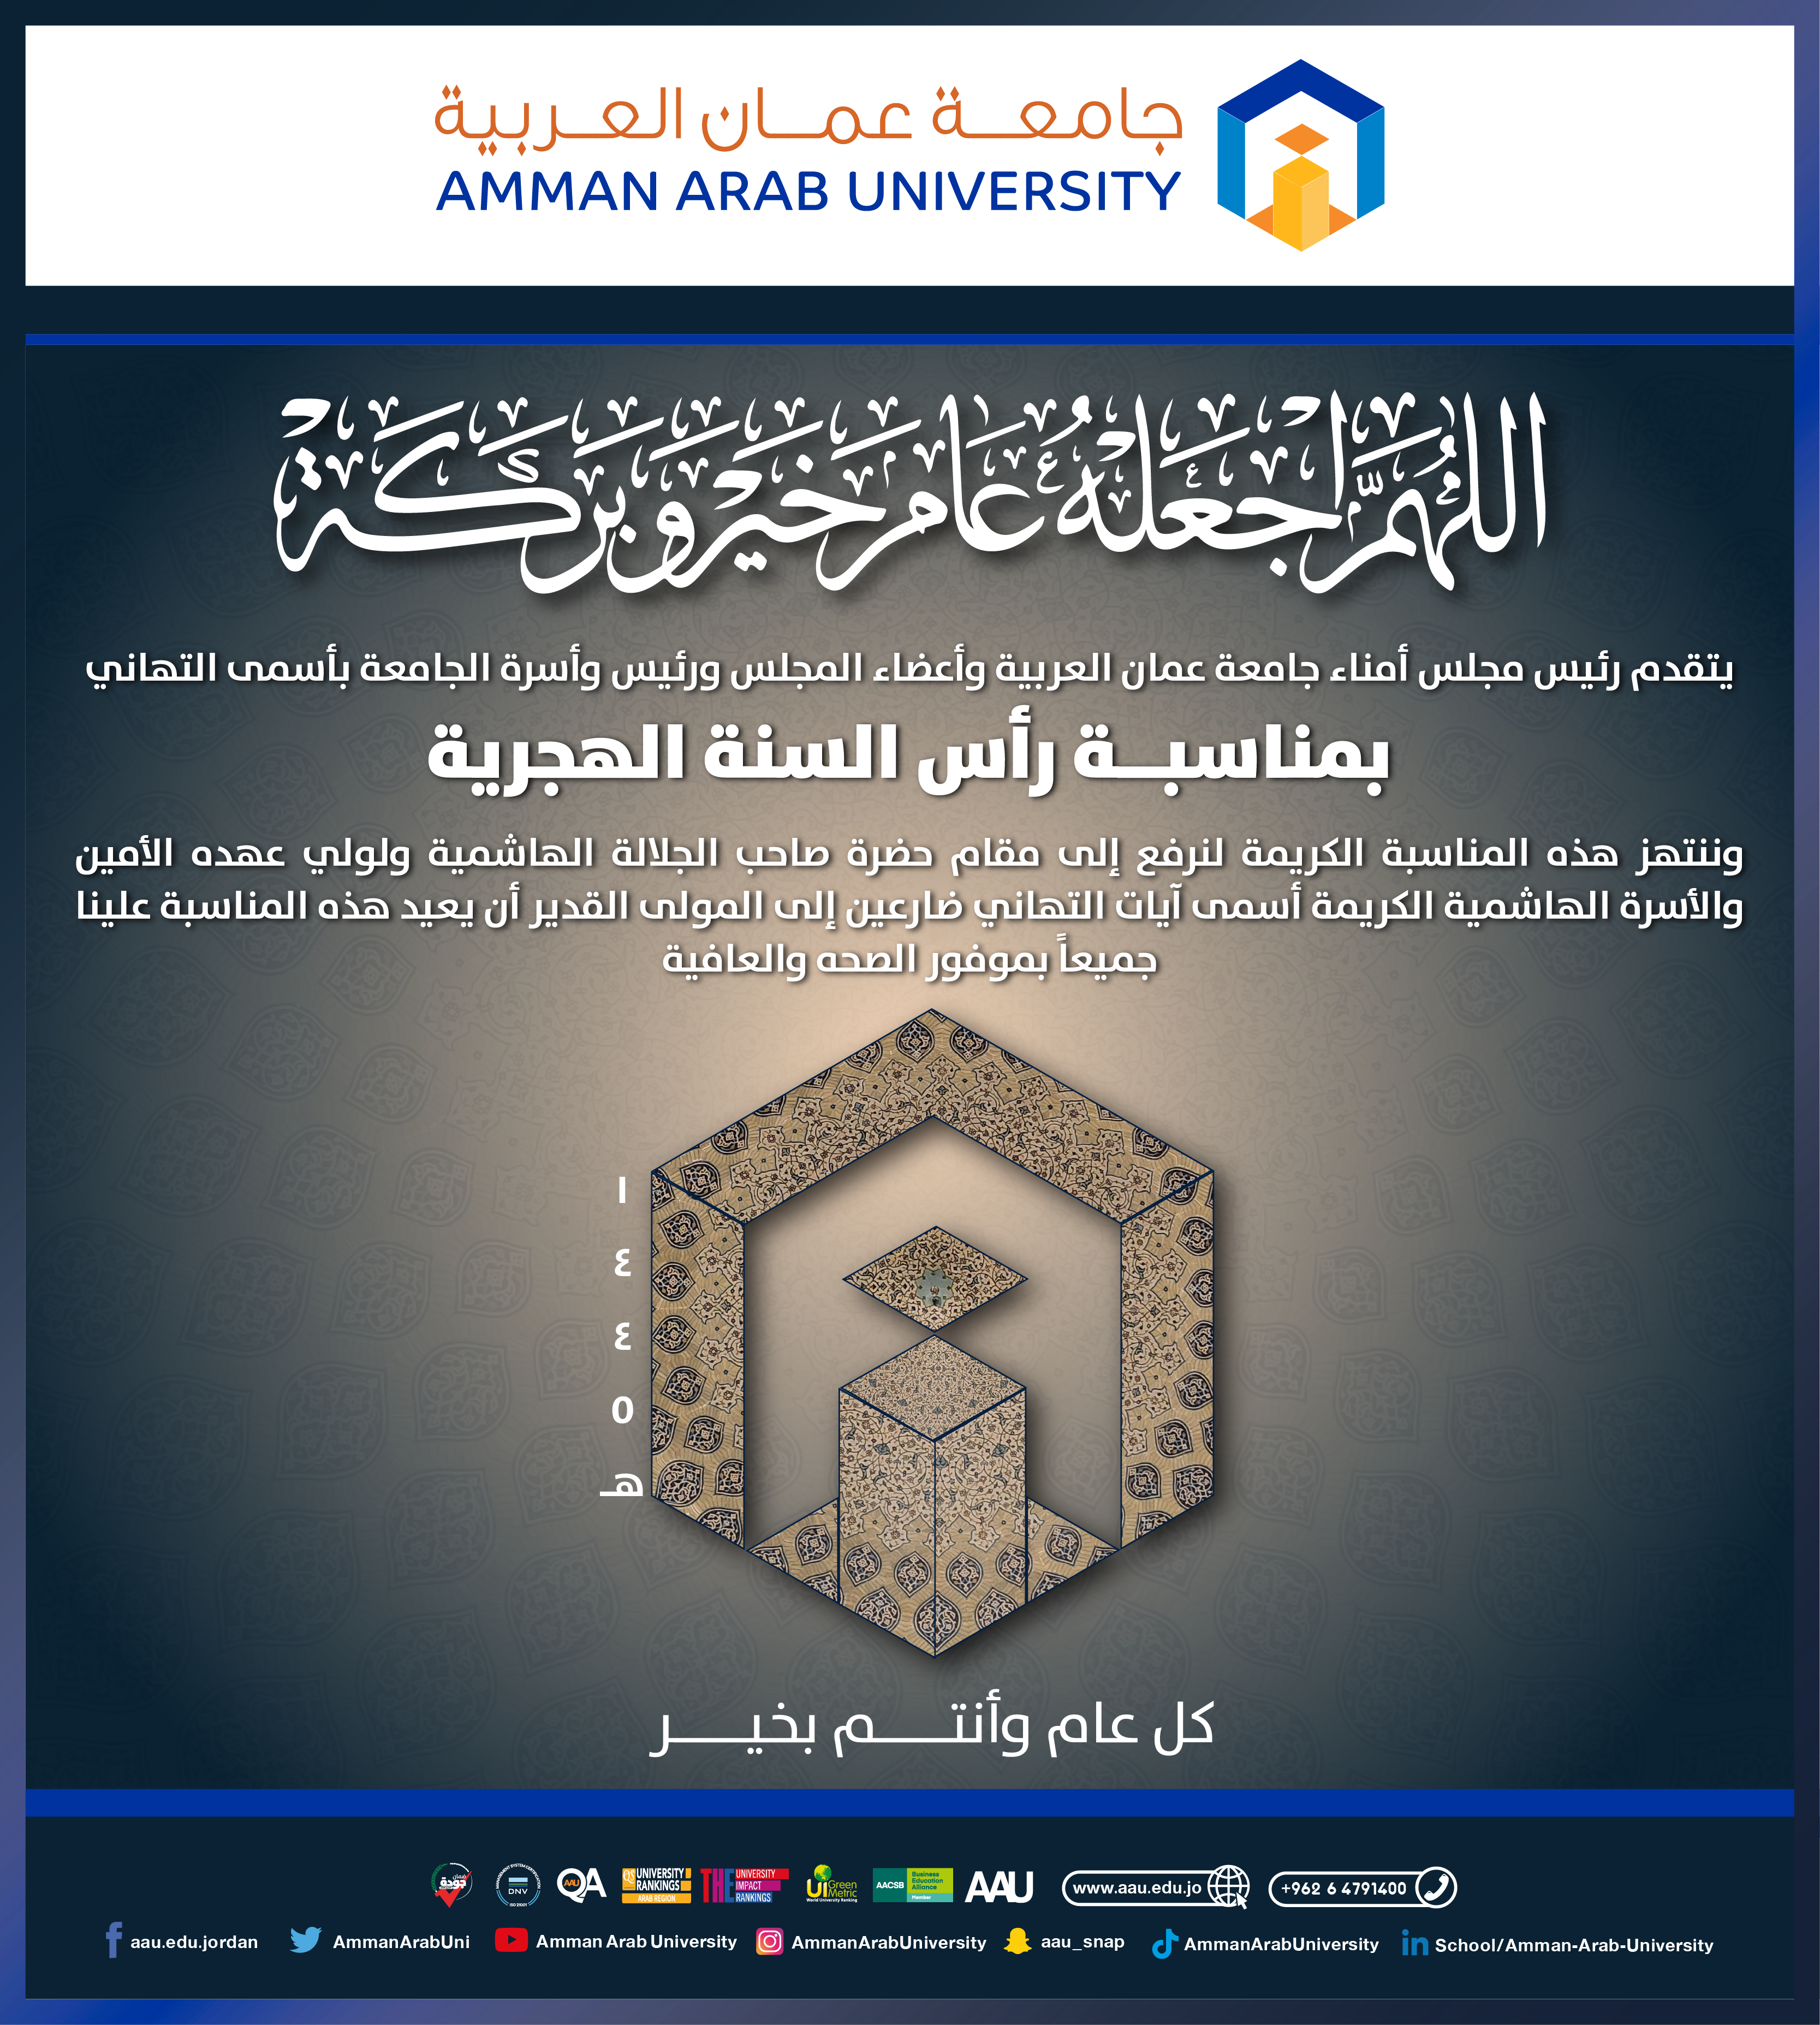 جامعة عمان العربية تهنئ بمناسبة رأس السنة الهجرية 